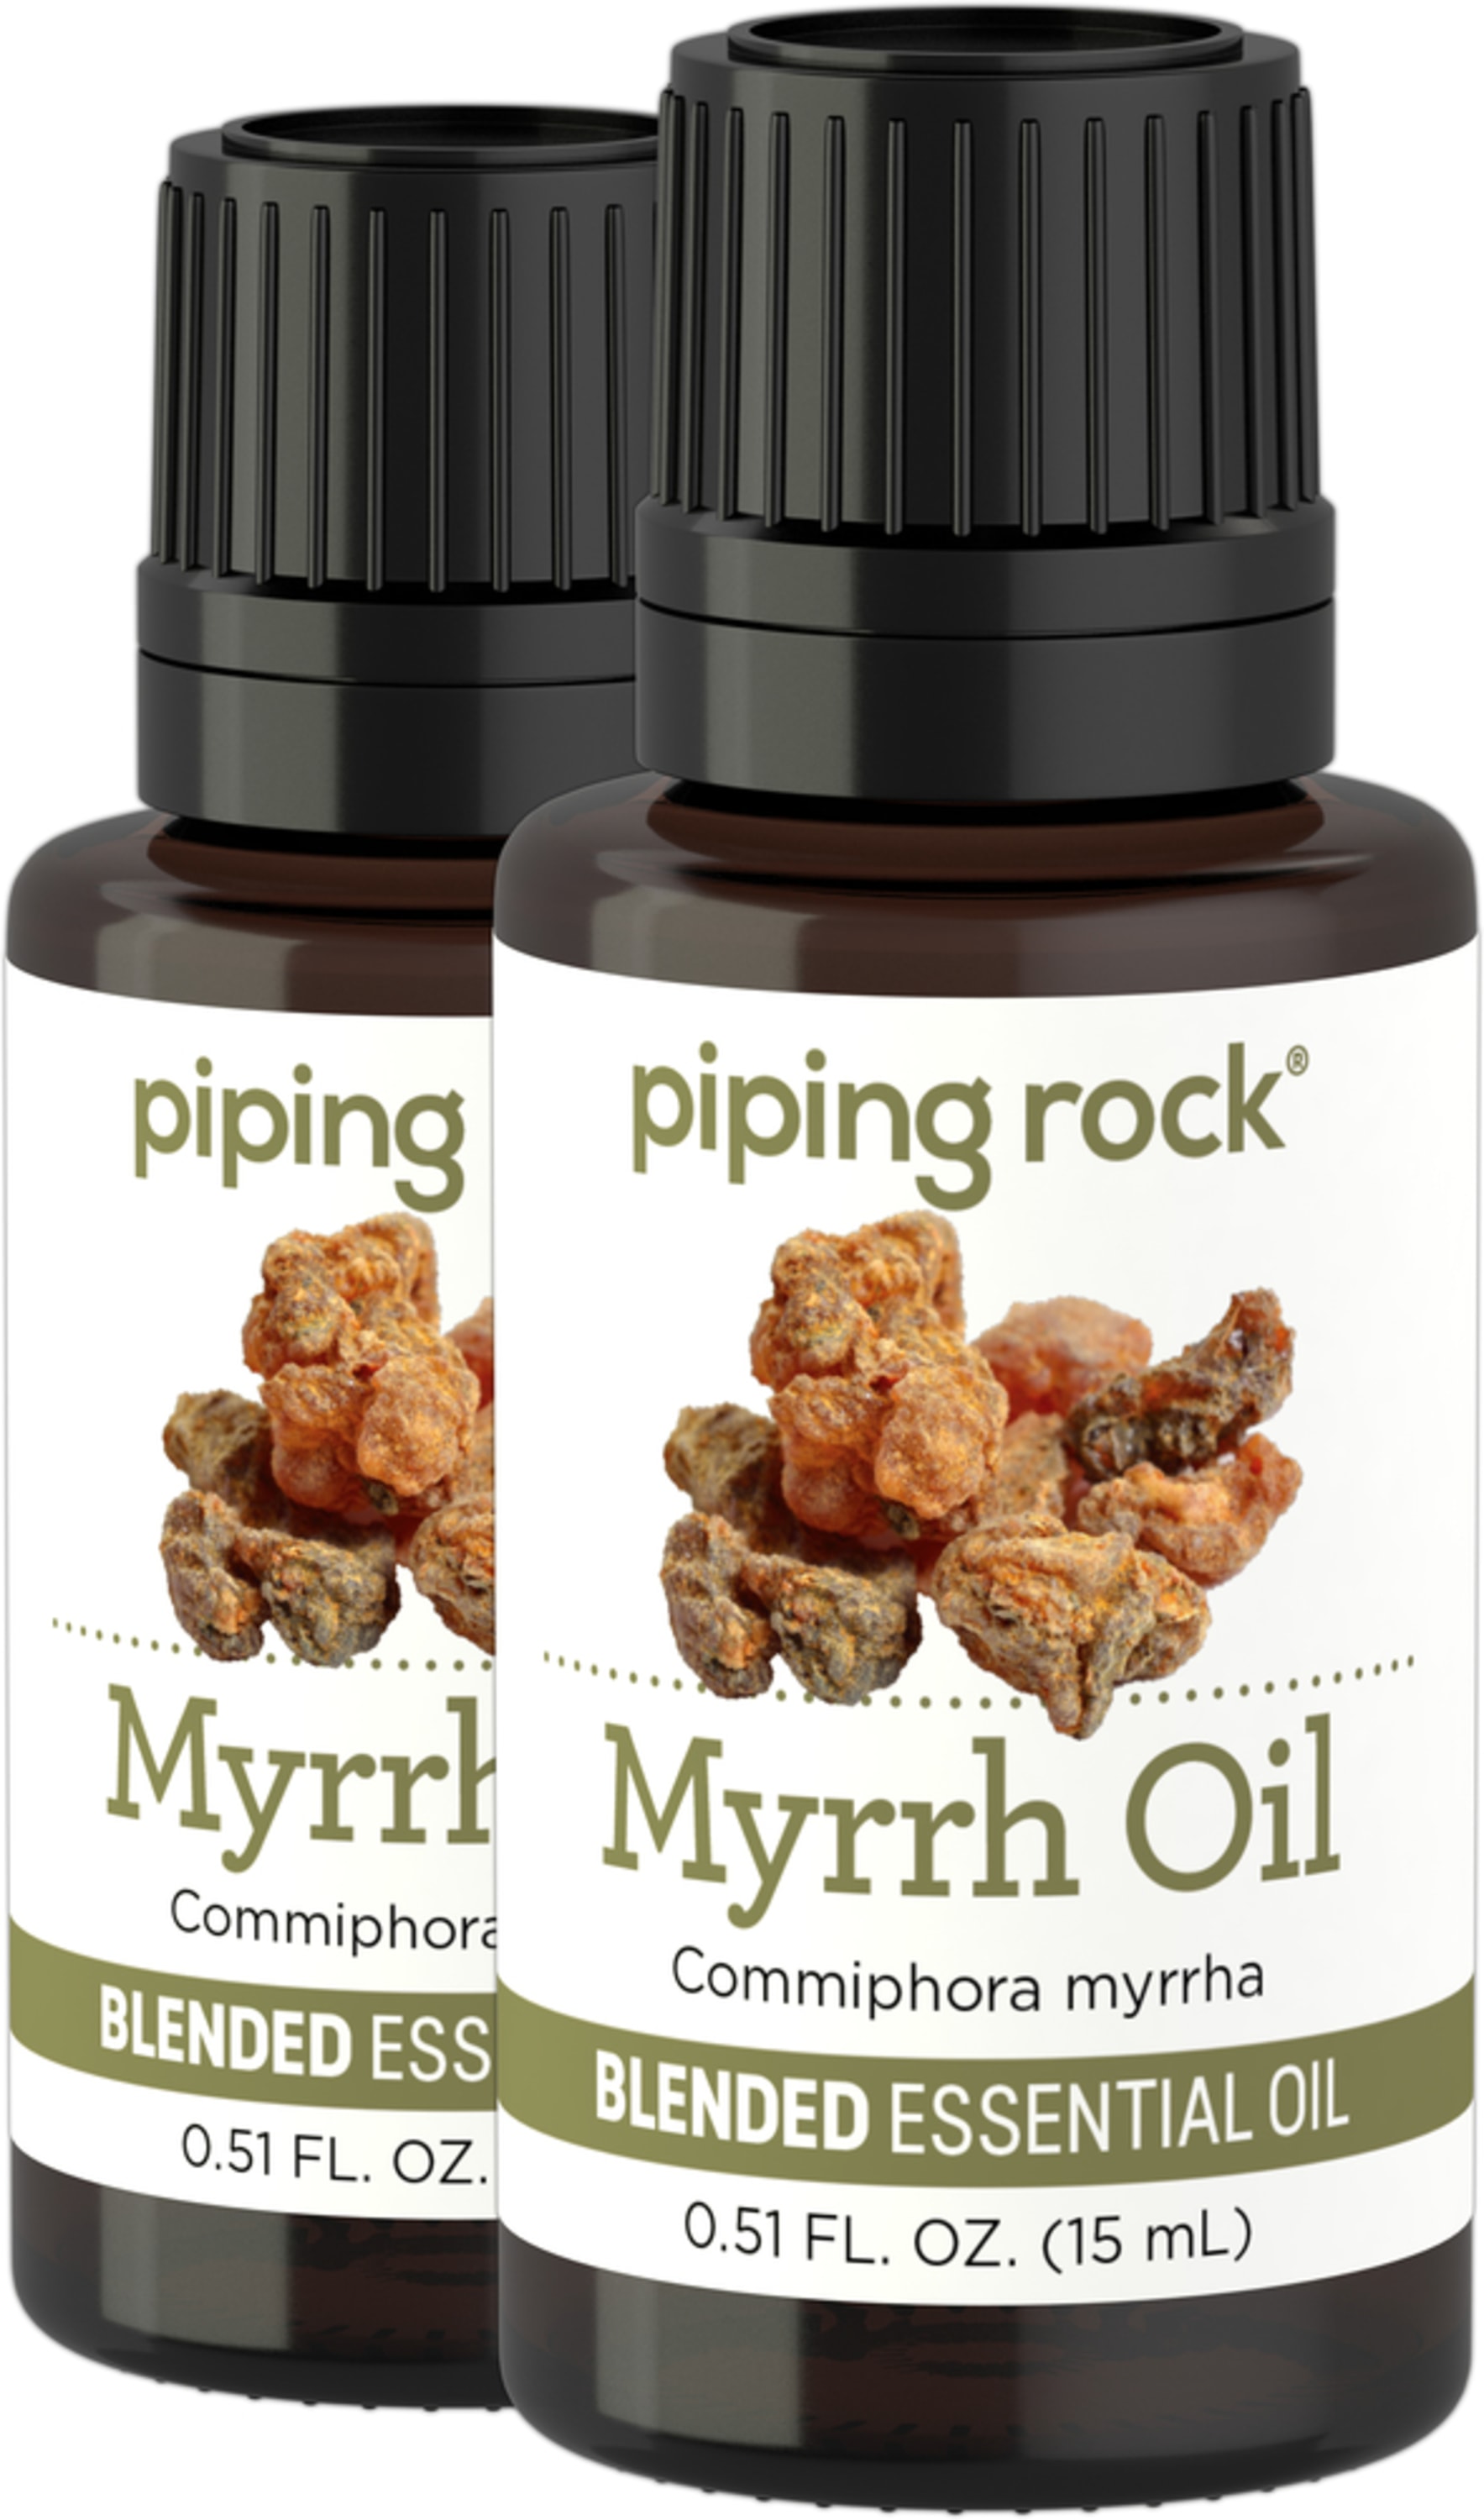 All About Myrrh Oil